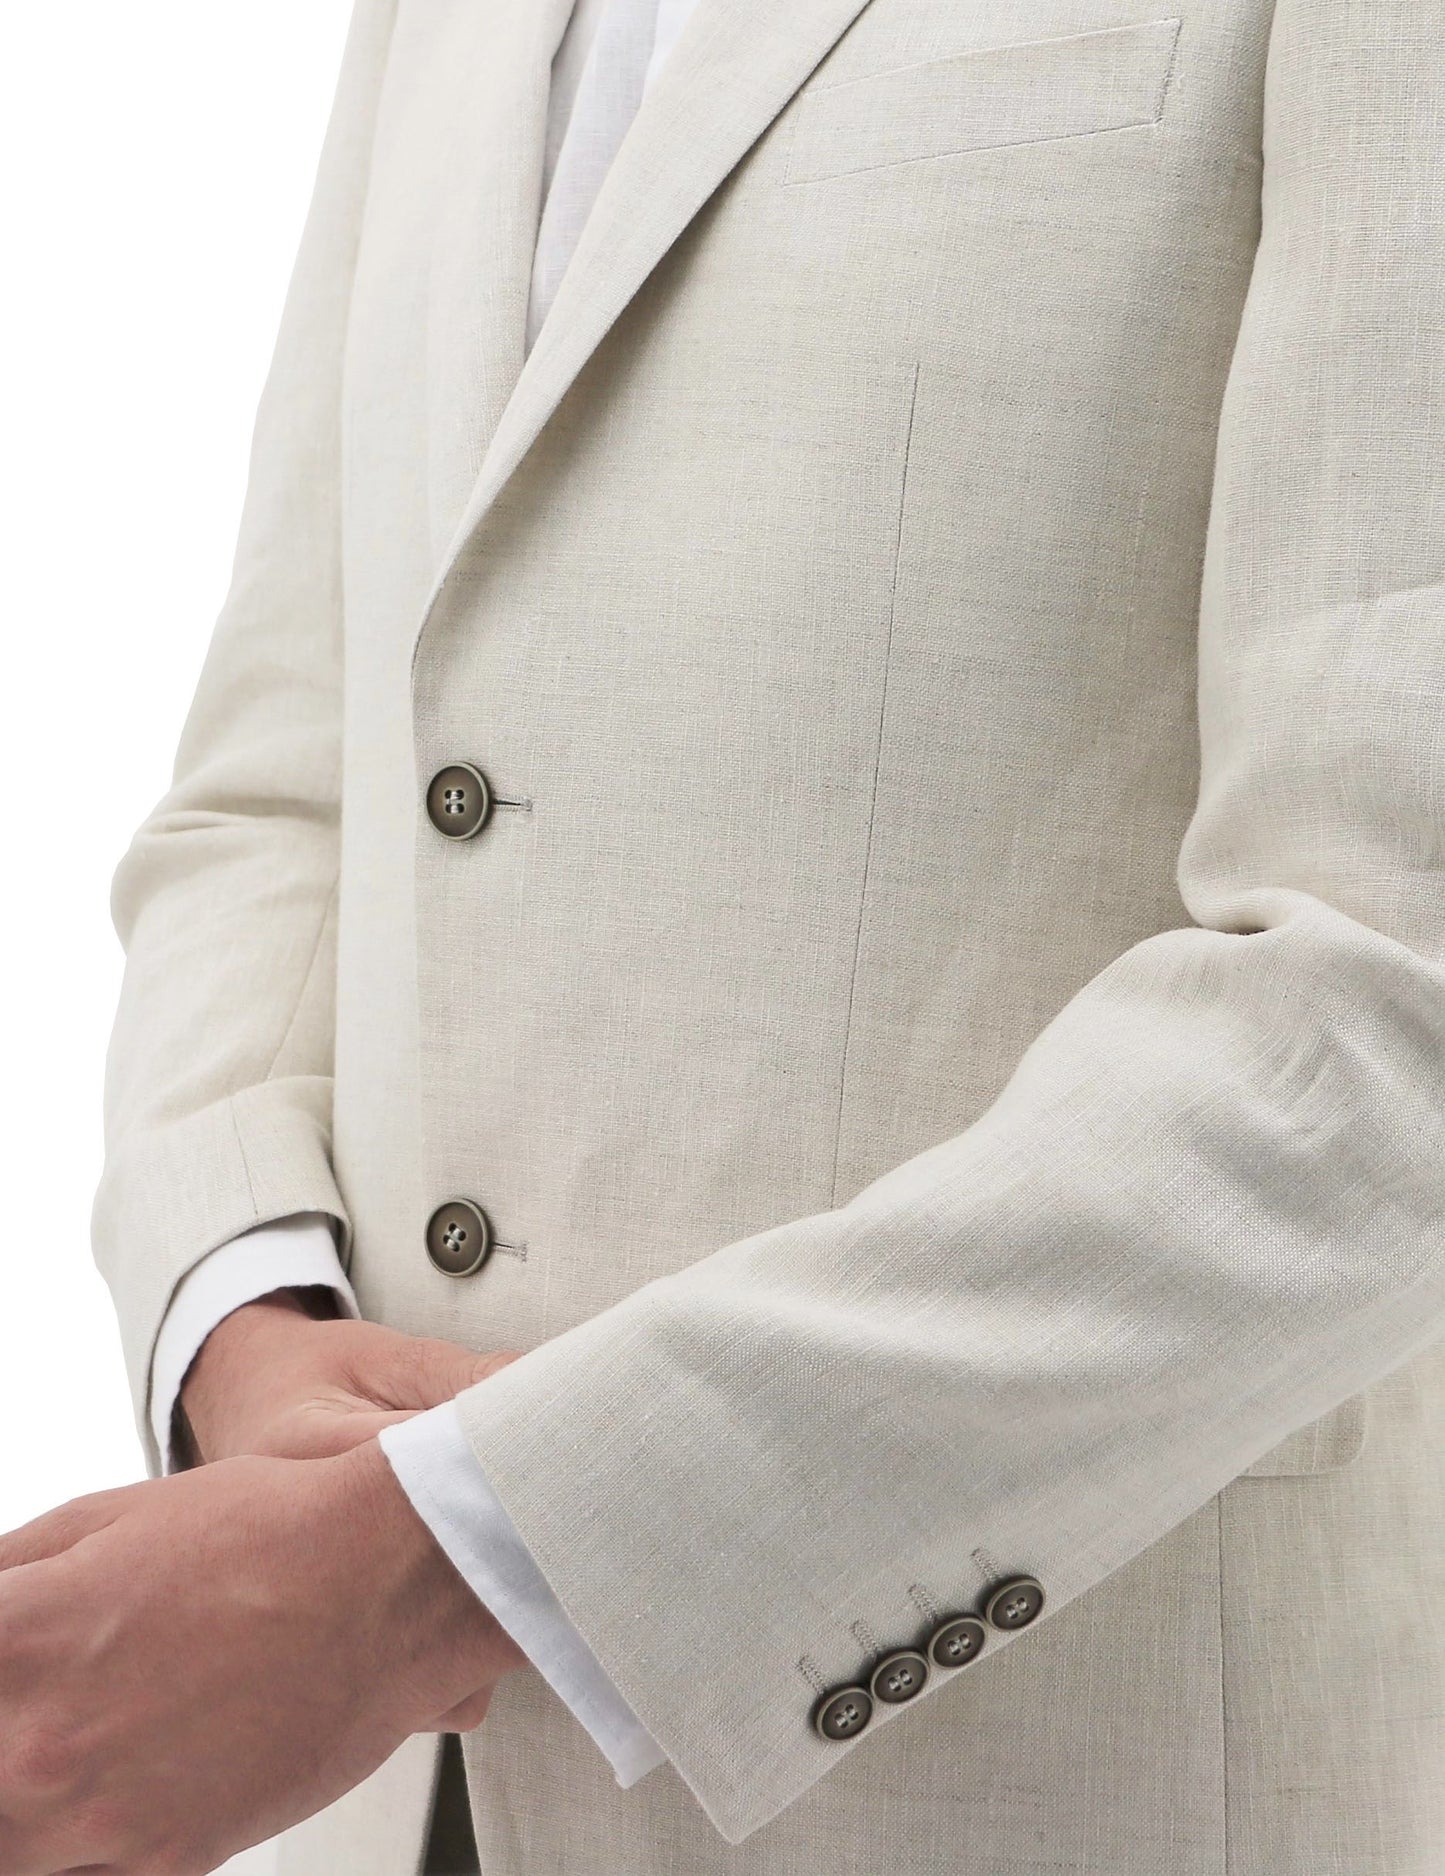 Shape 339 Sand Linen Suit Jacket